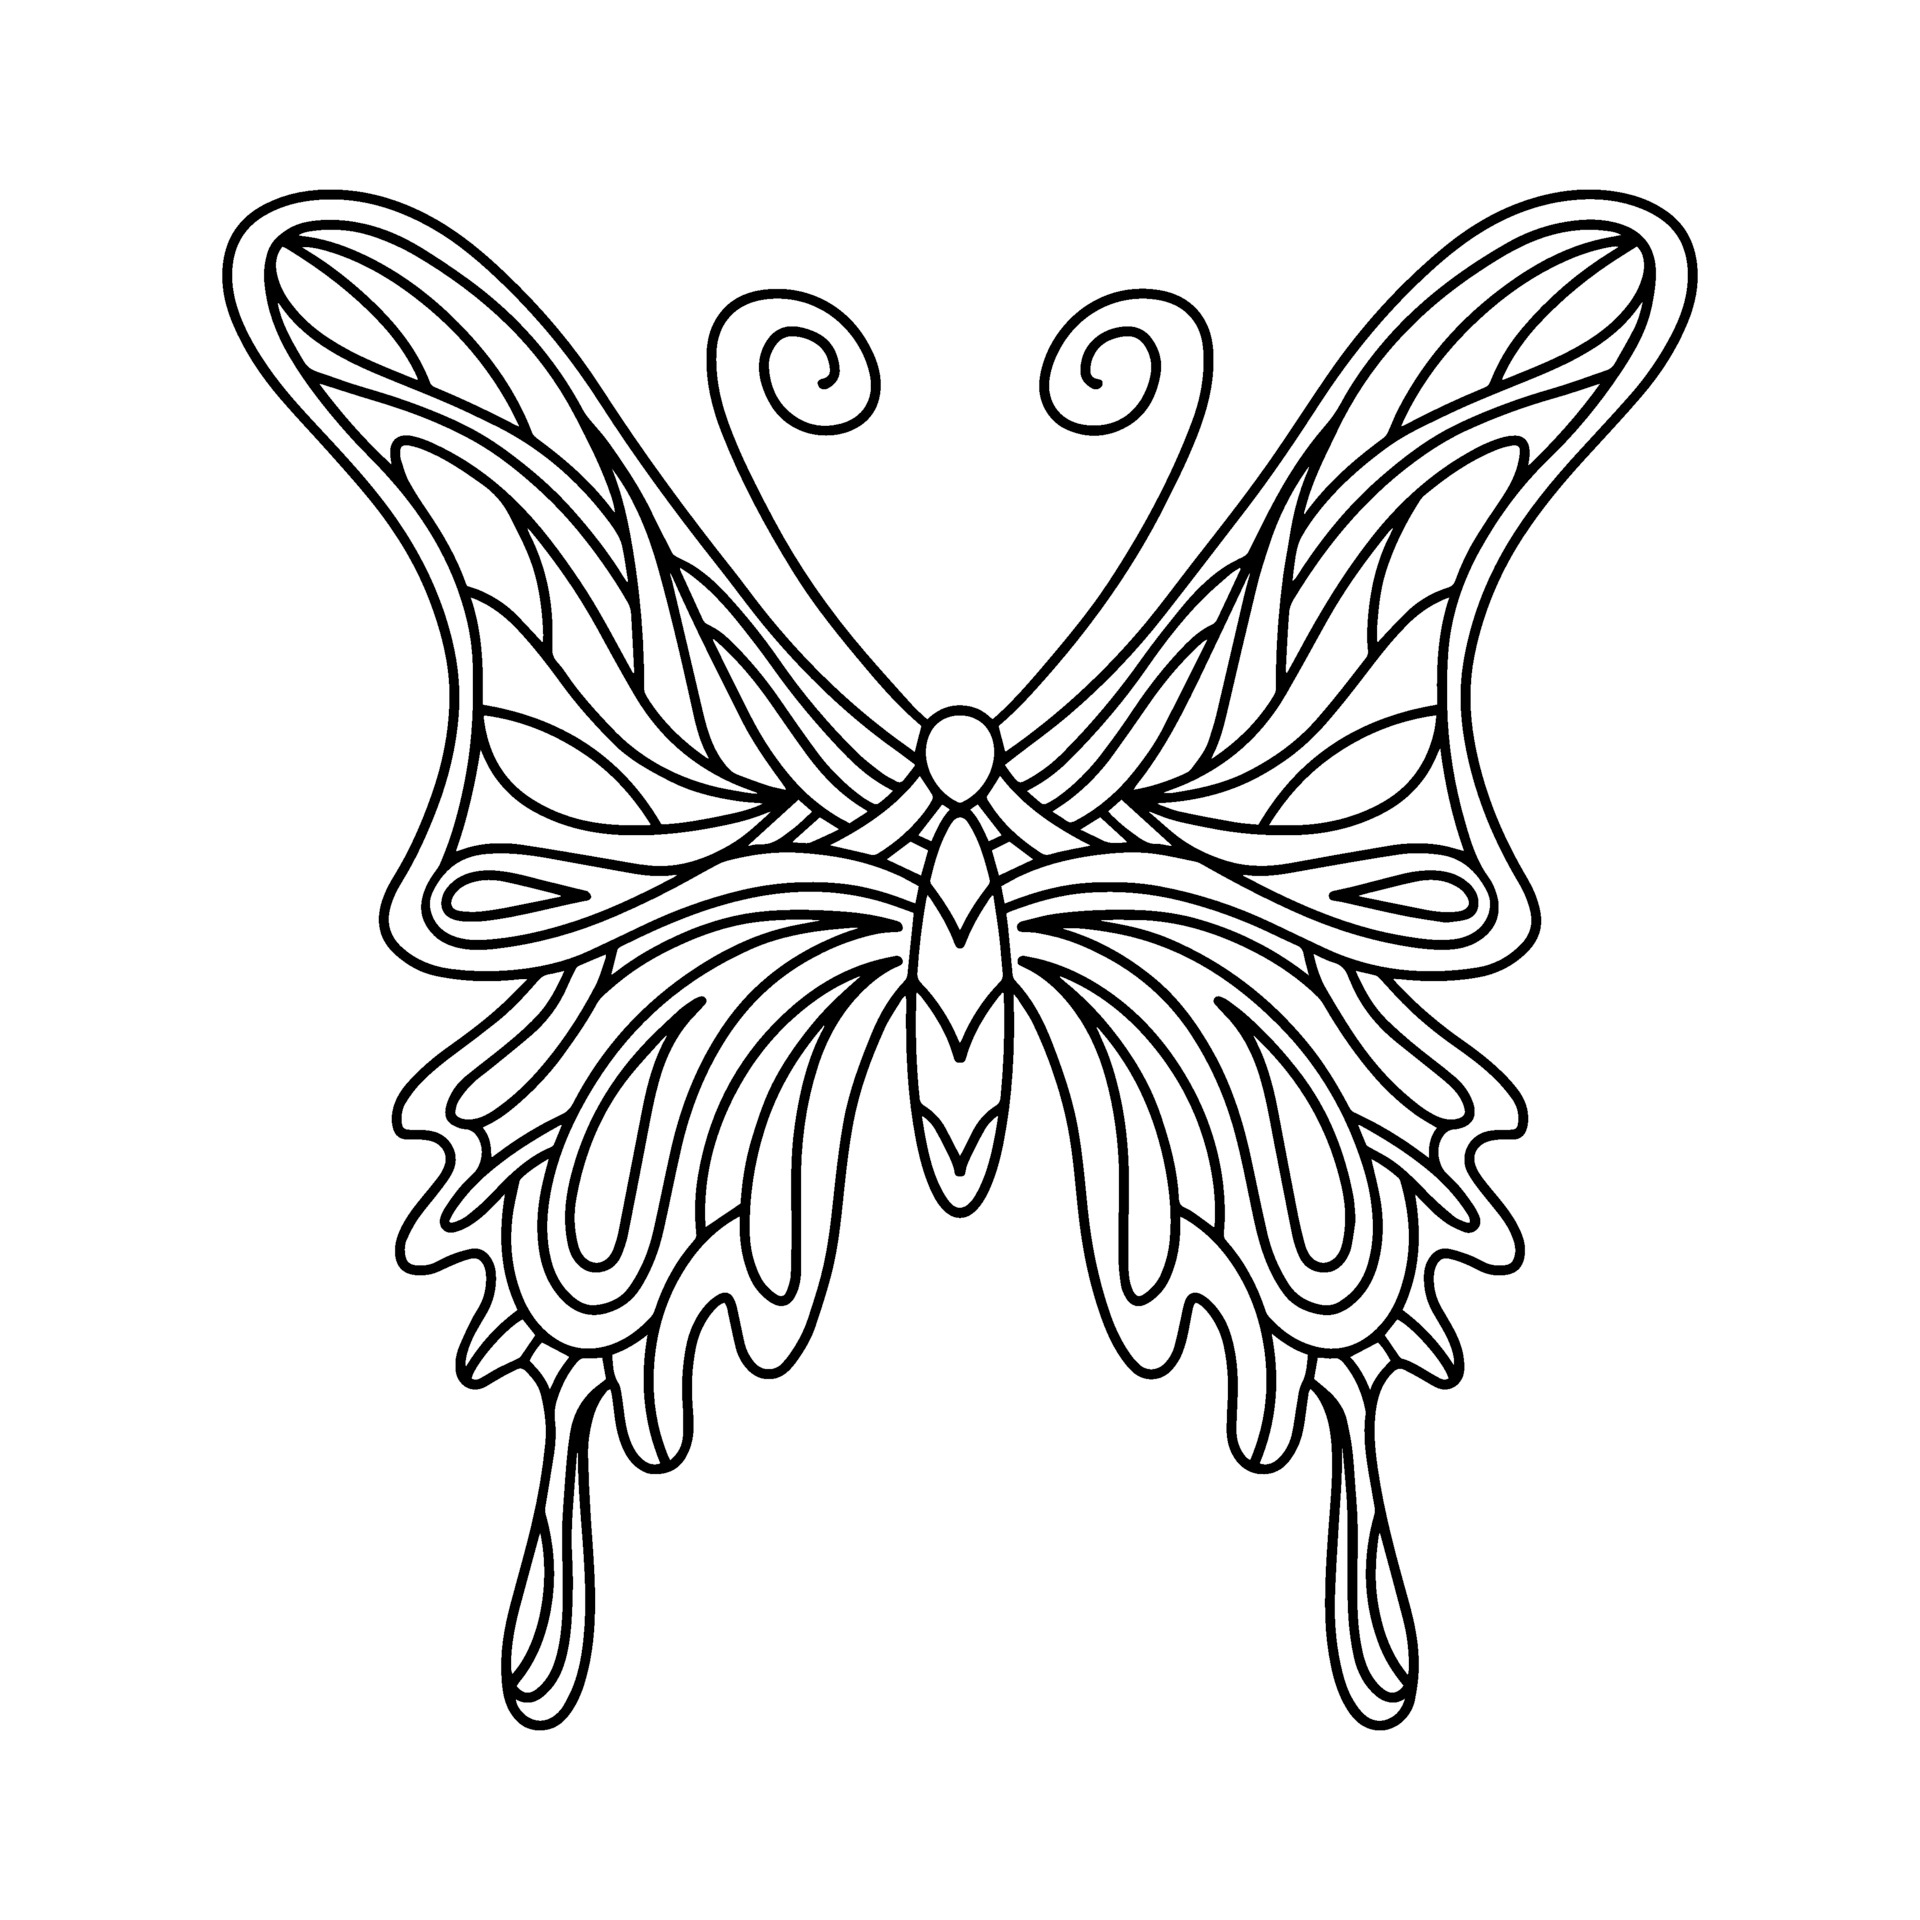 vlinder kleurboek. lineaire afbeelding van een vlinder. het vector 2266135 Vectorkunst bij Vecteezy